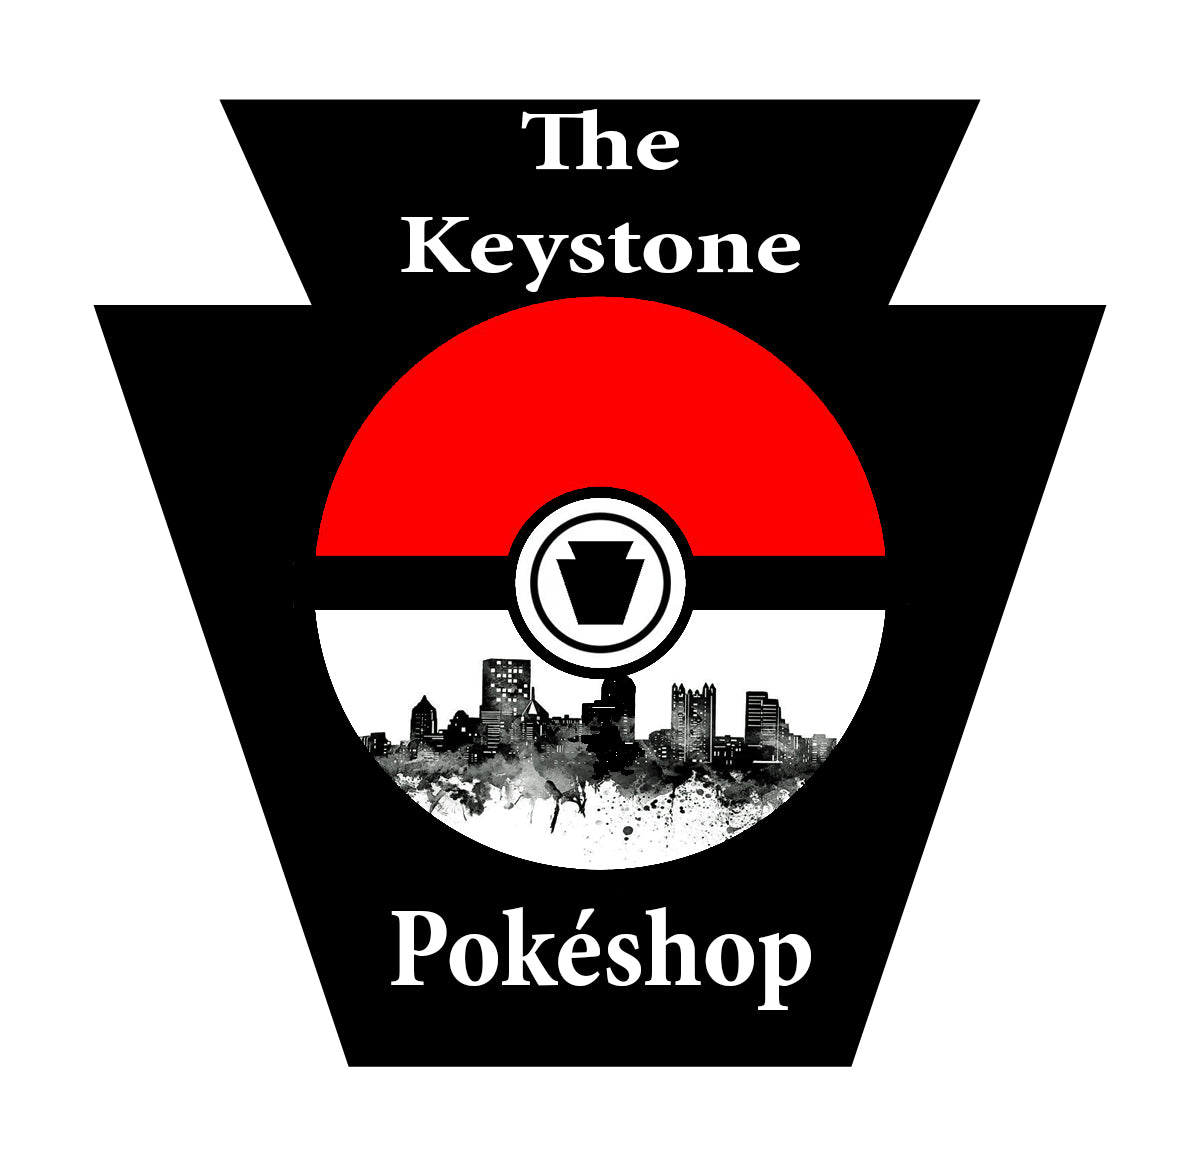 The Keystone Pokéshop